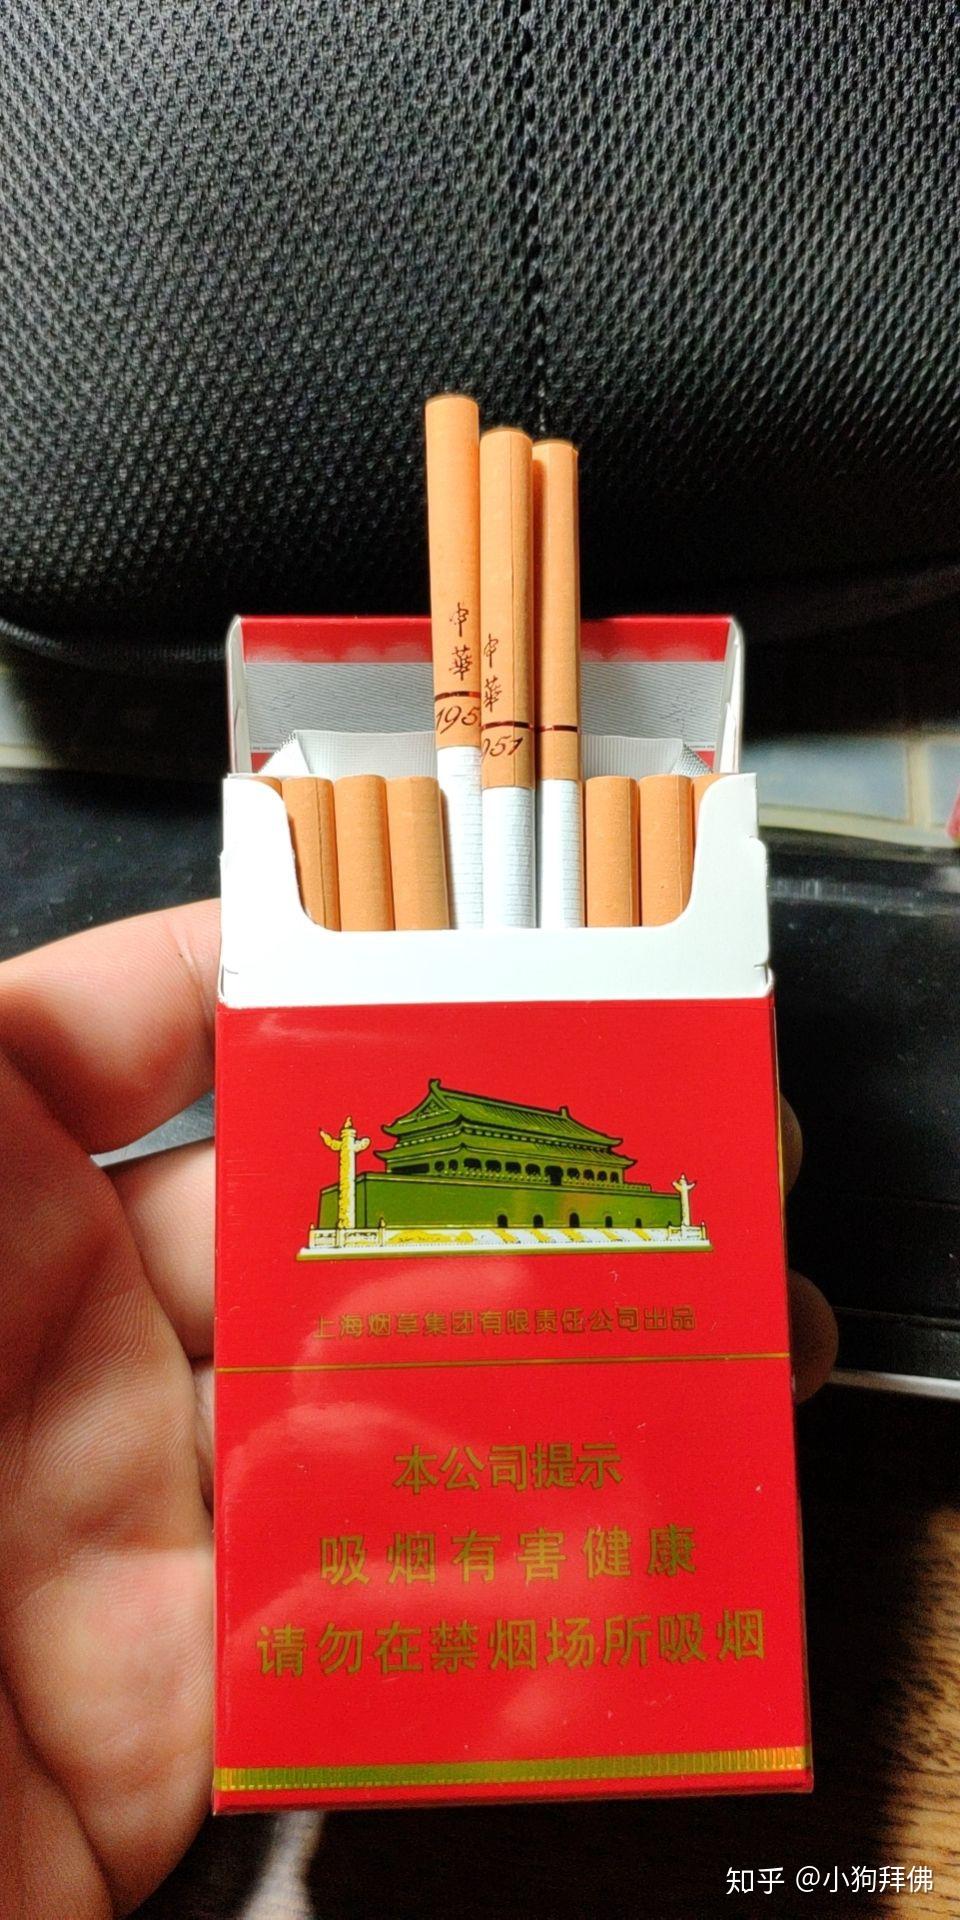 新款中华细支香烟1951图片